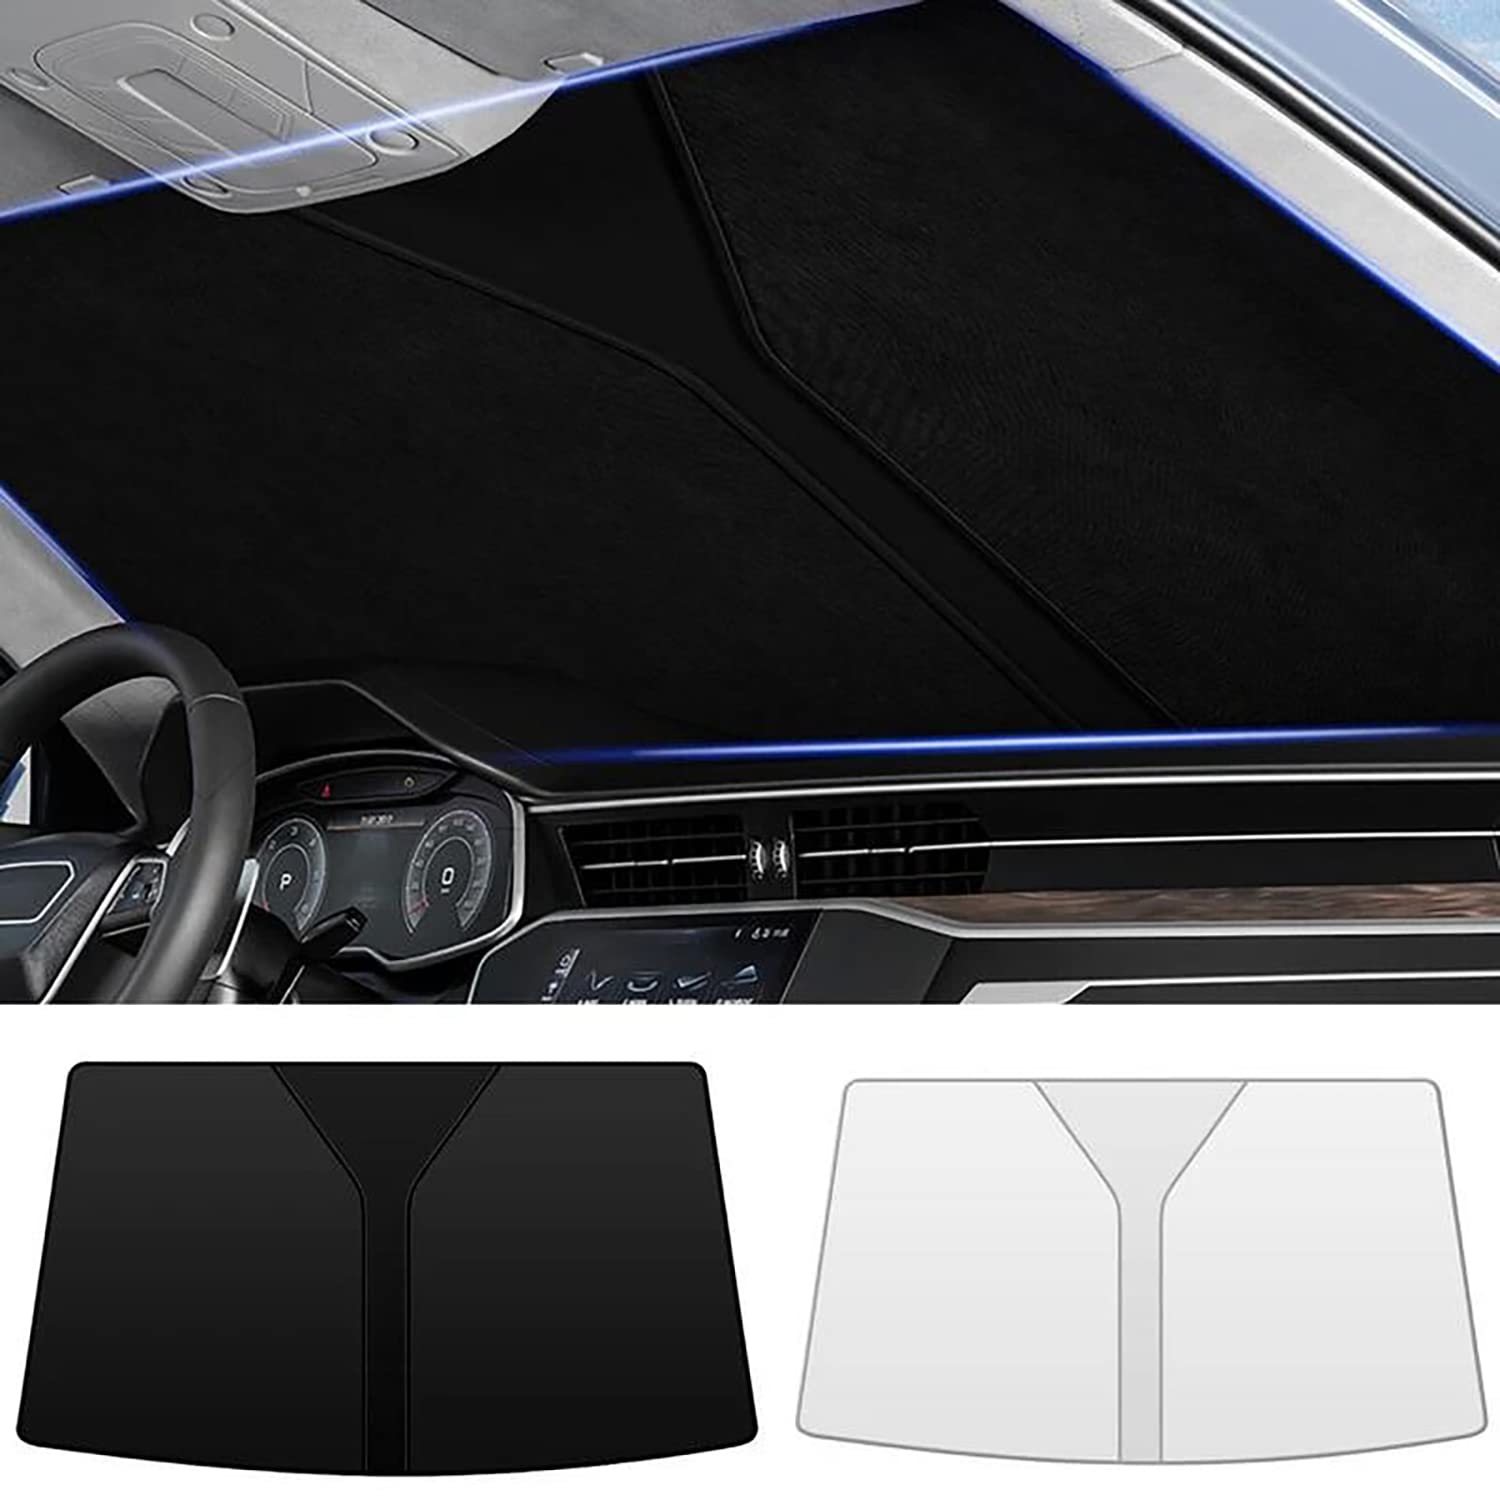 Frontscheiben Sonnenschutz Passend für VW Touareg Ⅲ (CR) 2018 2019 2020 2021 2022 2023+, Hitzeschutz Auto UV-Reflexion, Faltbares Design, Einfache Lagerung,- Black von TANEND